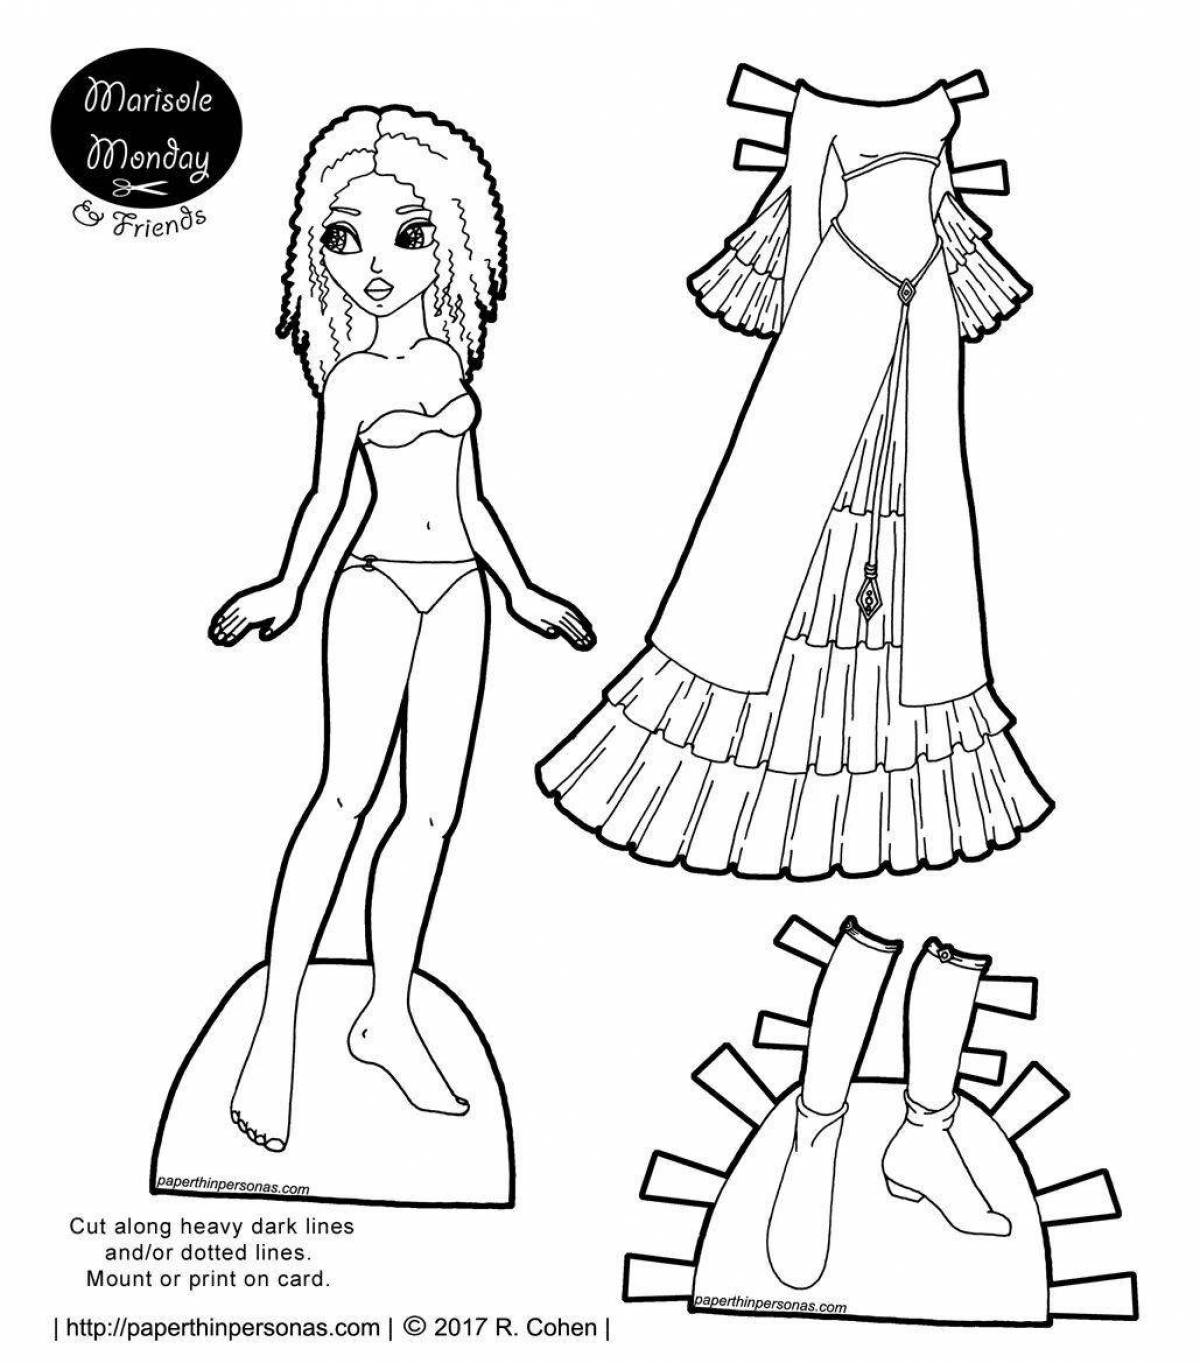 Фантастическая раскраска бумажная кукла эльза с одеждой, которую нужно вырезать